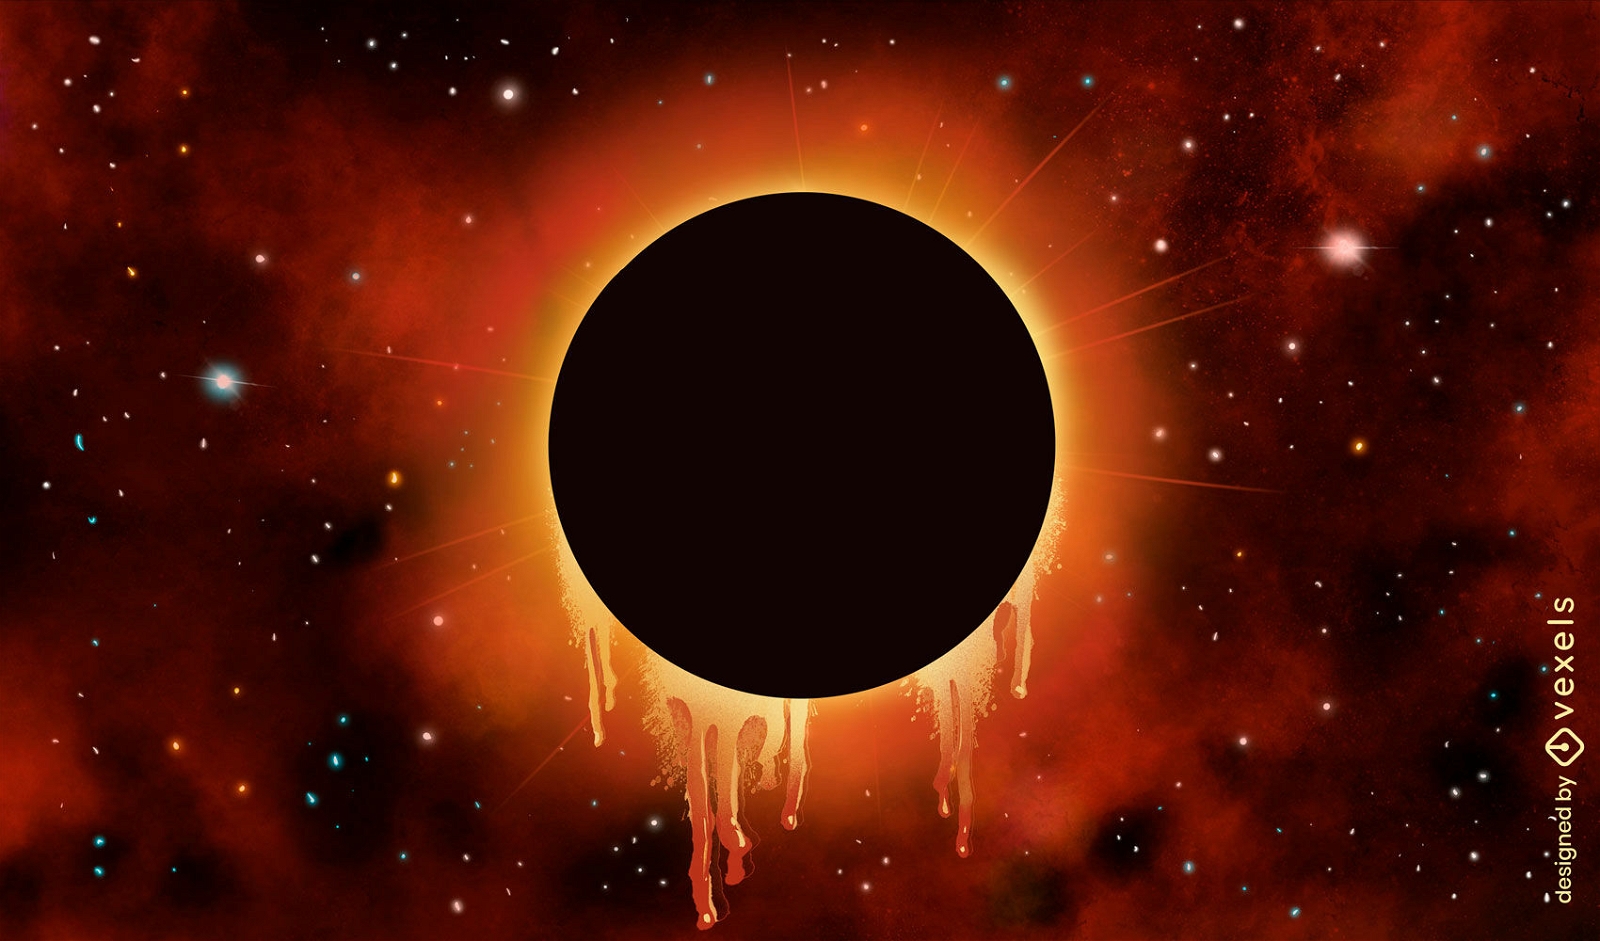 Eclipse solar en el fondo de la ilustración del espacio